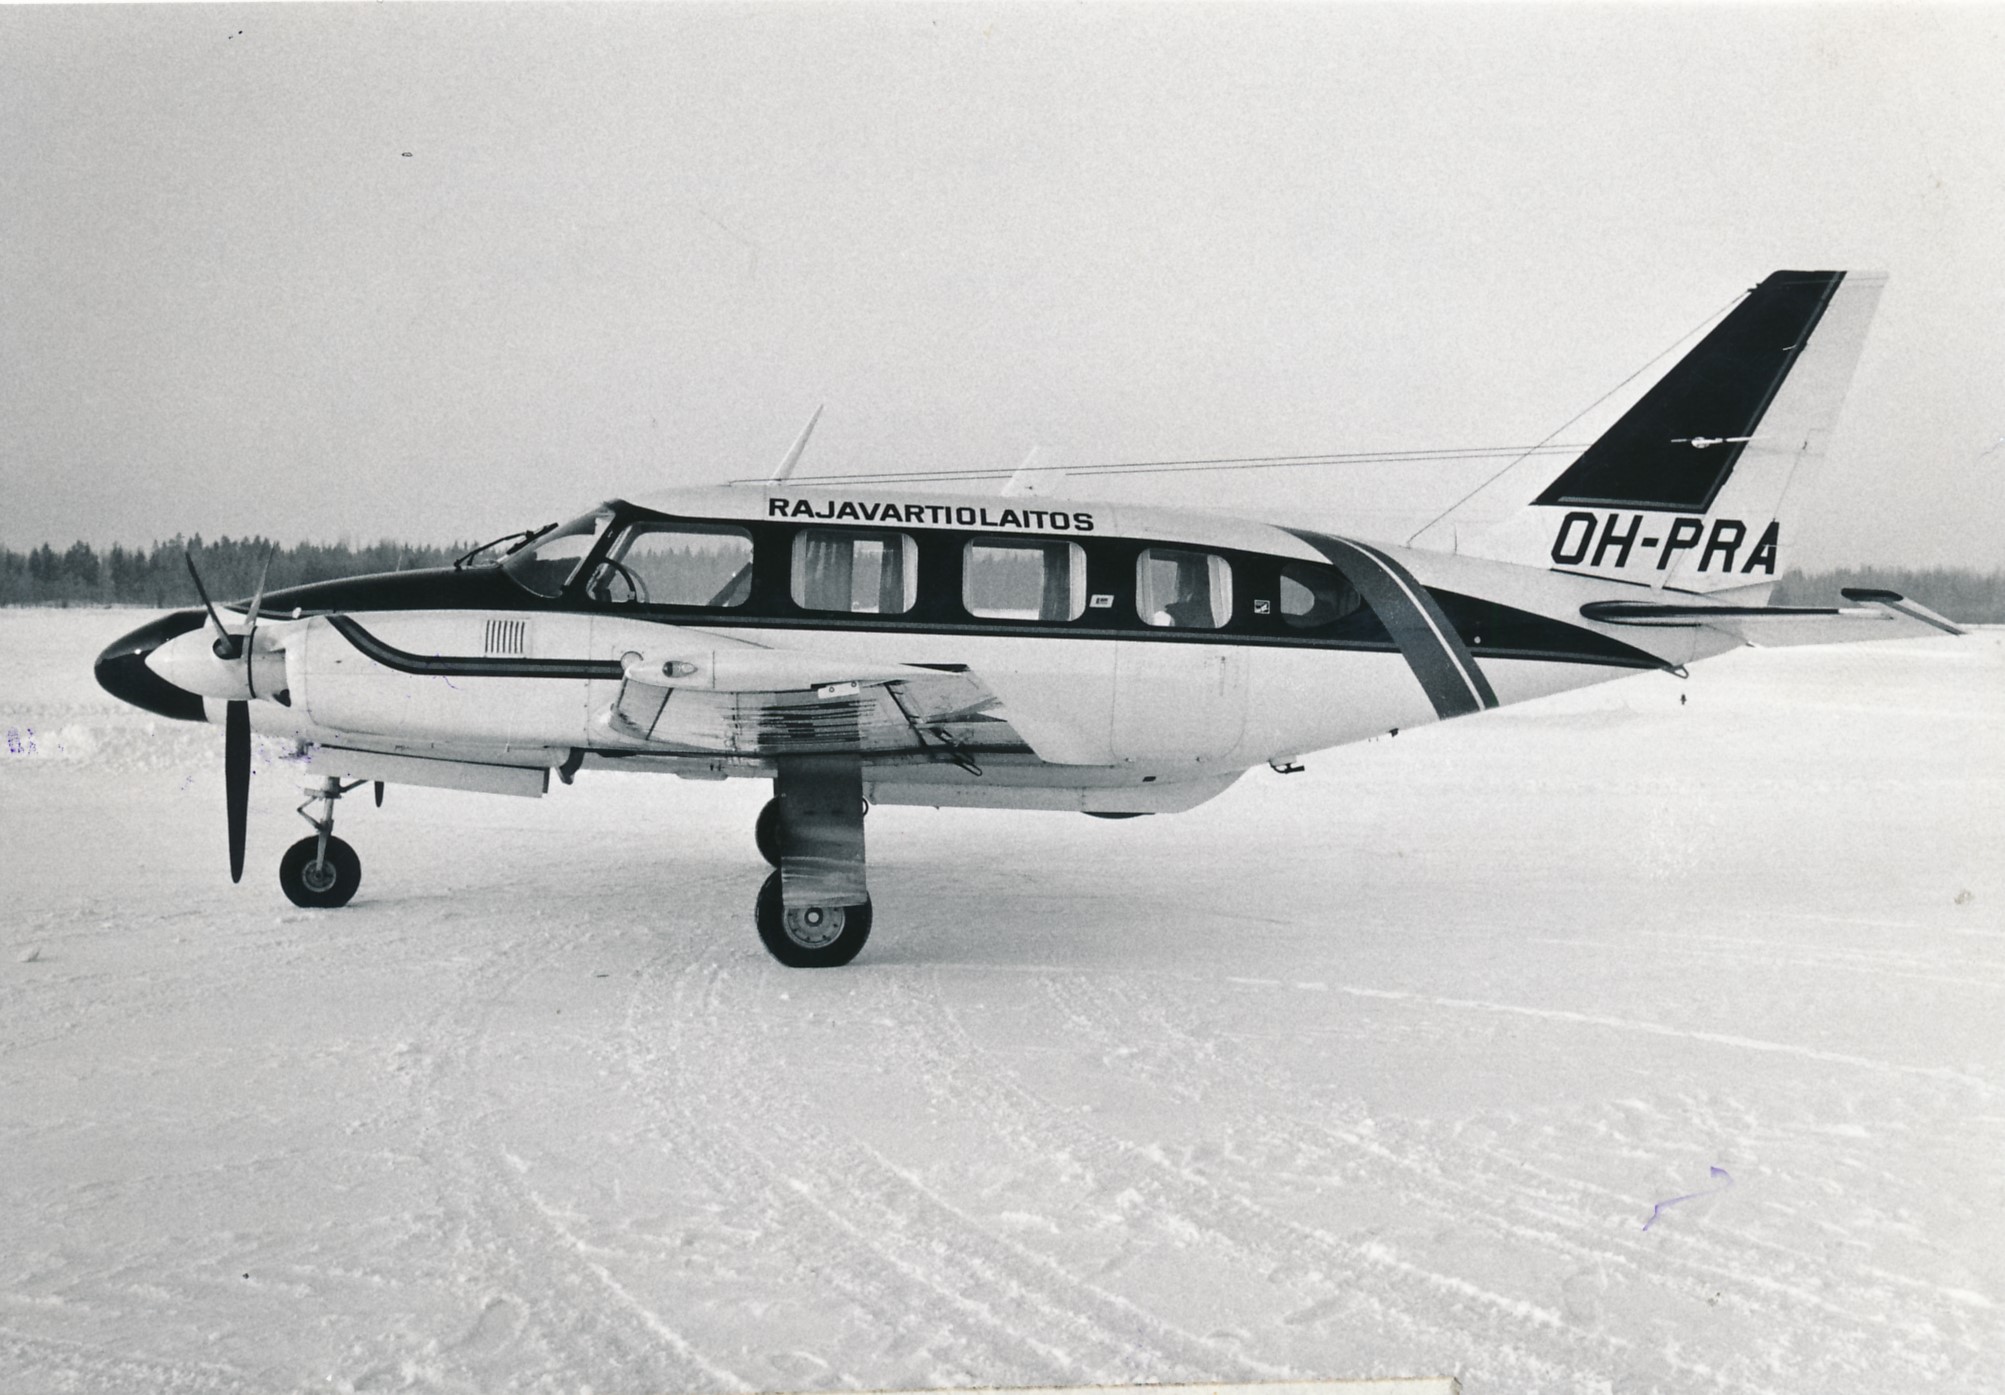 Tvåmotorigt flygplan i ett vinterlandskap fotograferat från sidan. På sidan av flygplanet ser man texten Gränsbevakningsväsendet.